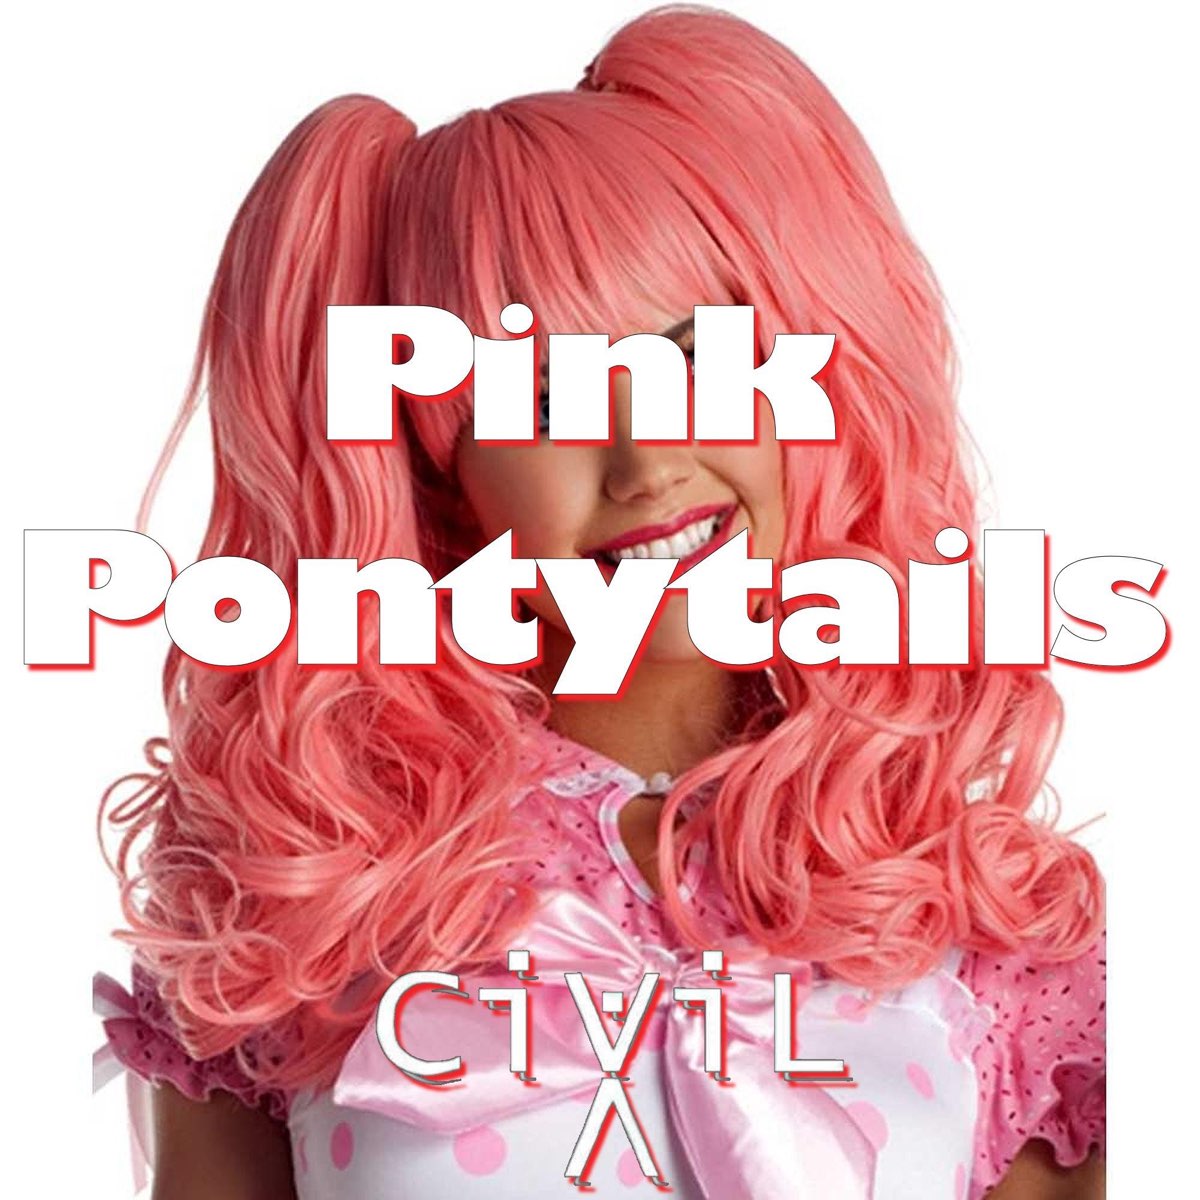 Сингл Пинк. Born Pink альбом. Pink слушаю музыку. "Sinhour ponytails Pink".